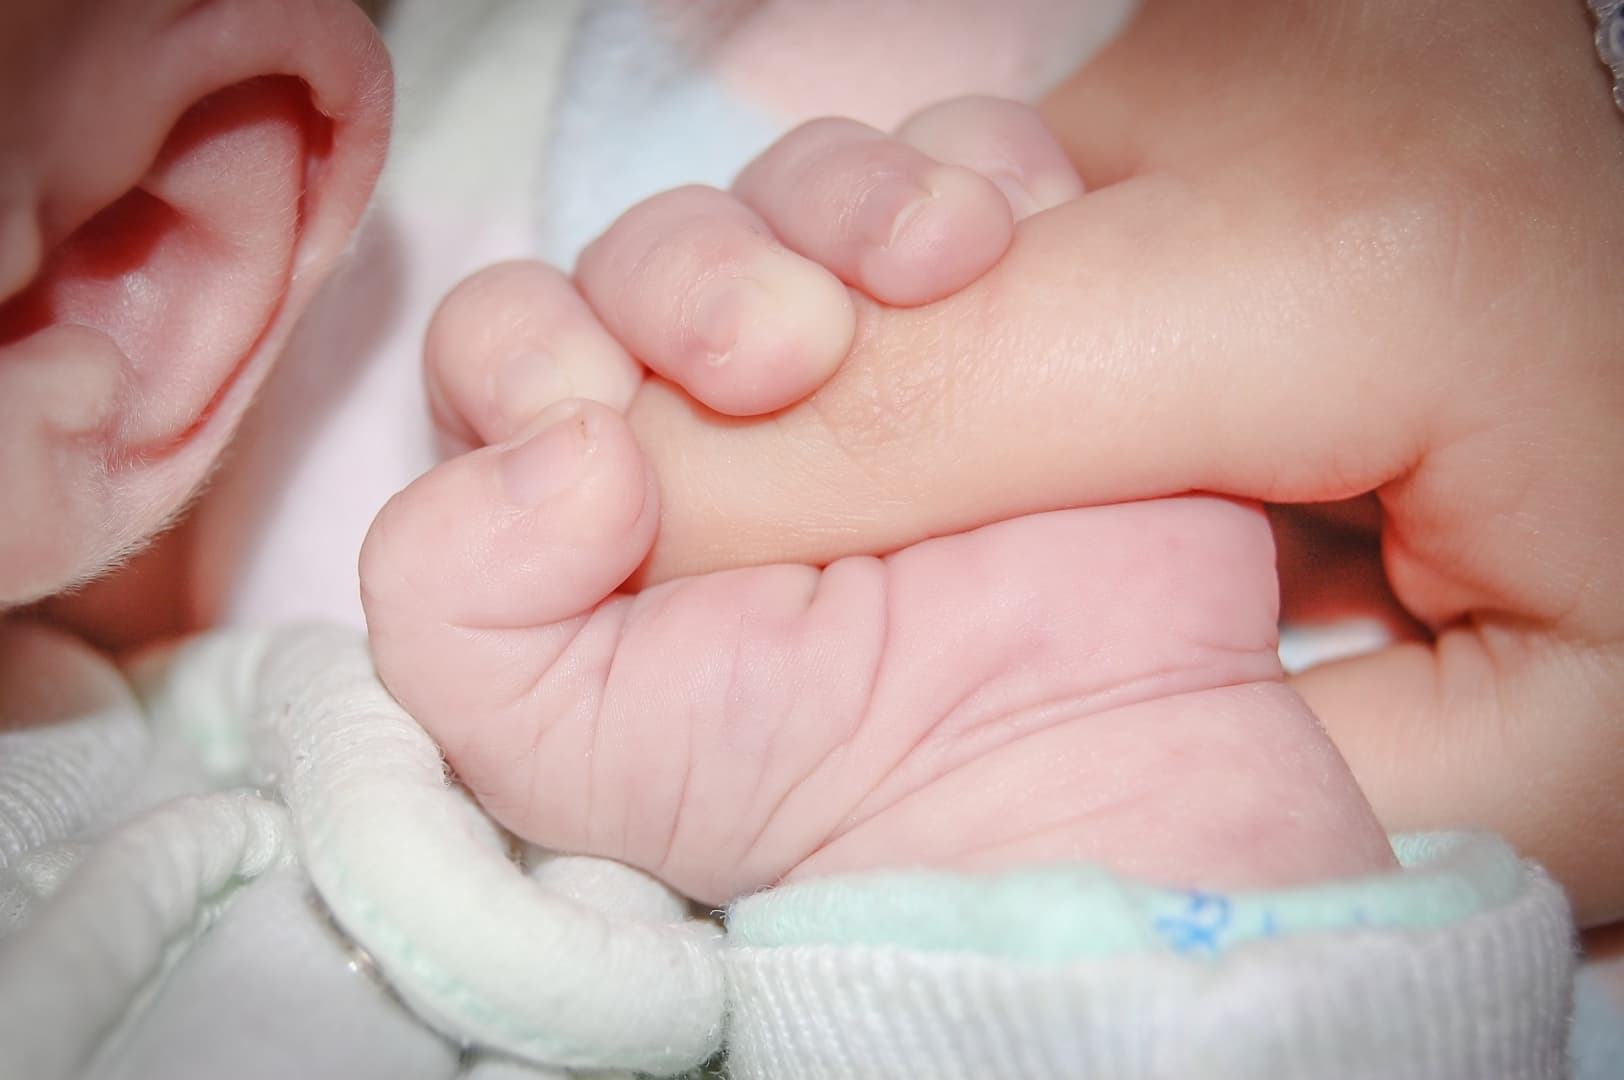 Szörnyű tragédia: Elutasította a császármetszést, a baba belehalt az otthonszülésbe